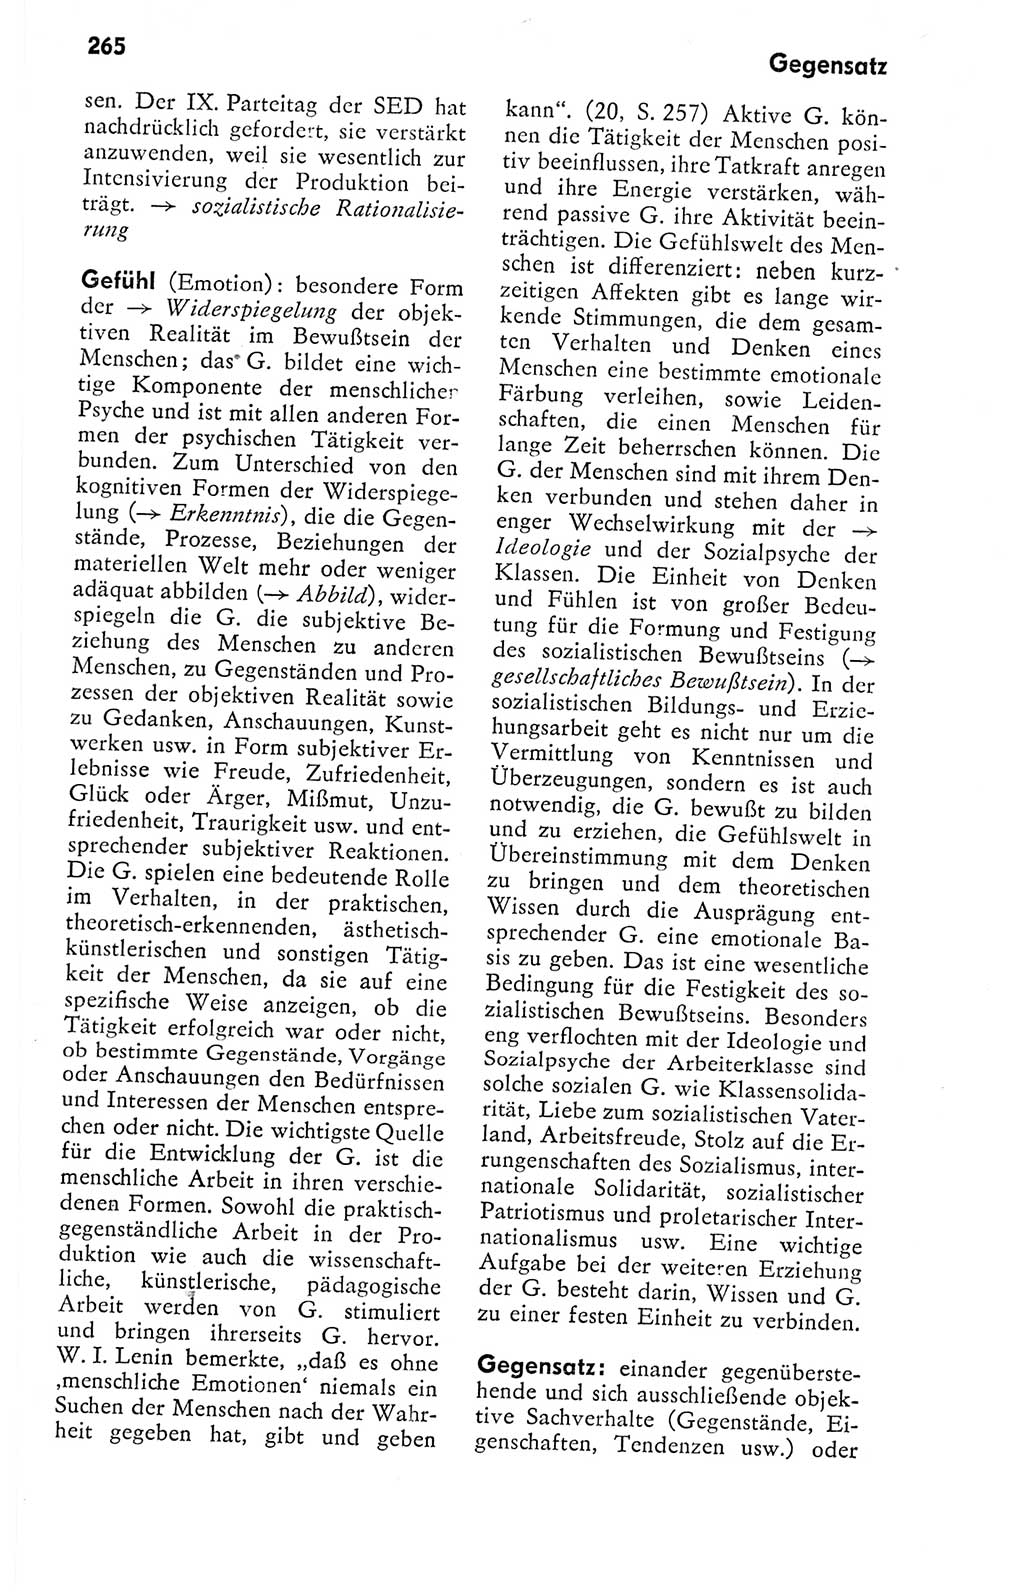 Kleines politisches Wörterbuch [Deutsche Demokratische Republik (DDR)] 1978, Seite 265 (Kl. pol. Wb. DDR 1978, S. 265)